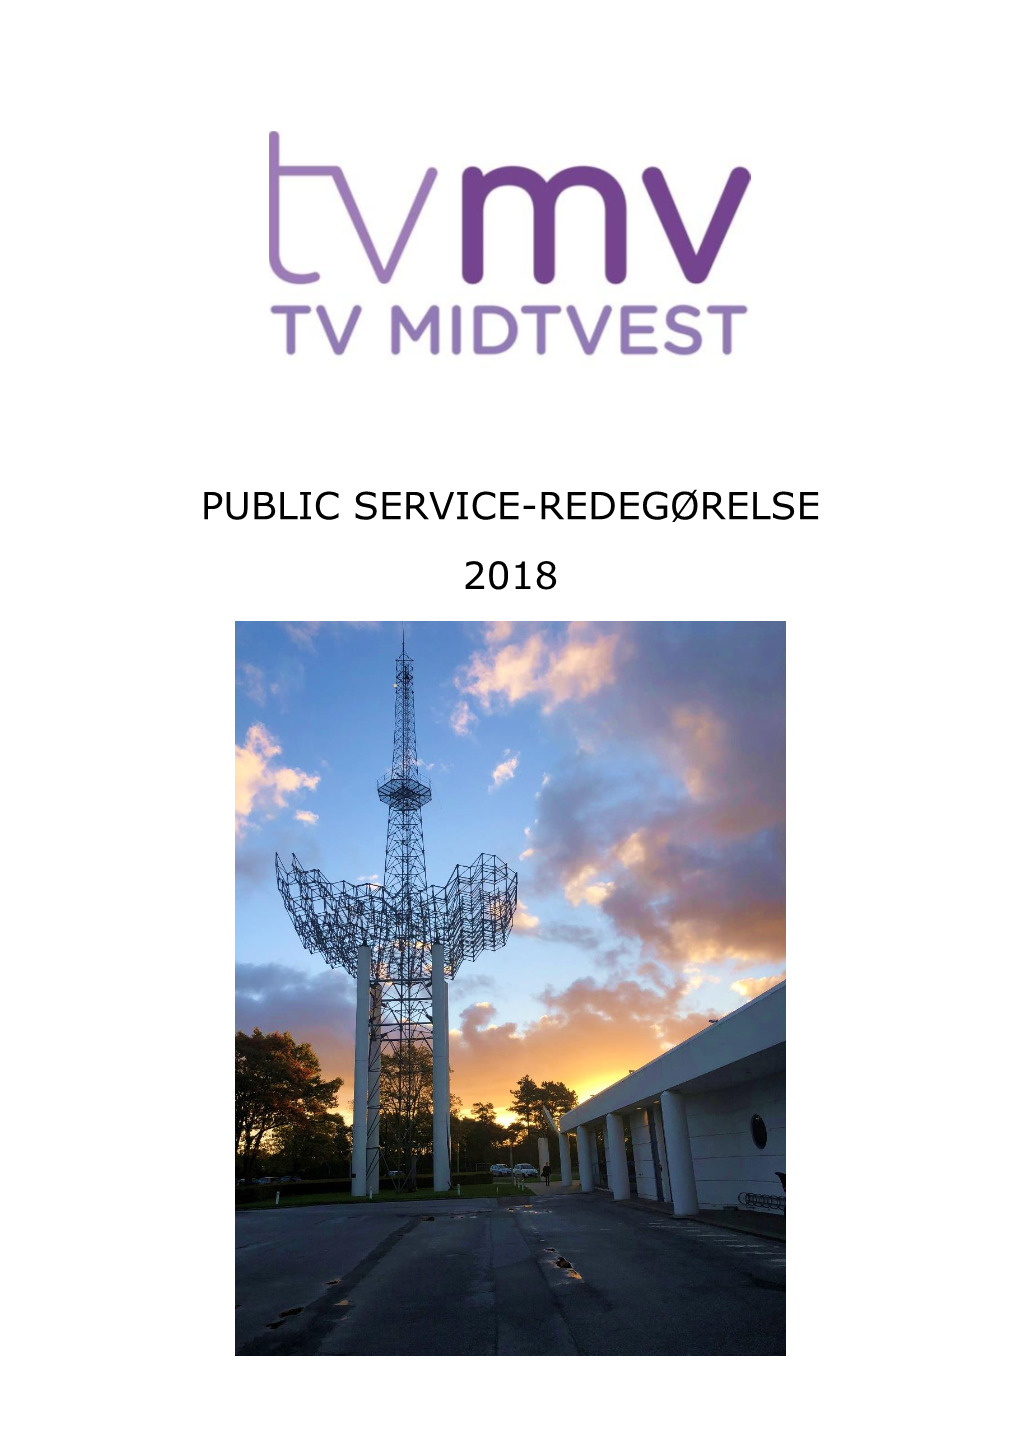 TV Midtvest Public Service-Redegørelse 2018